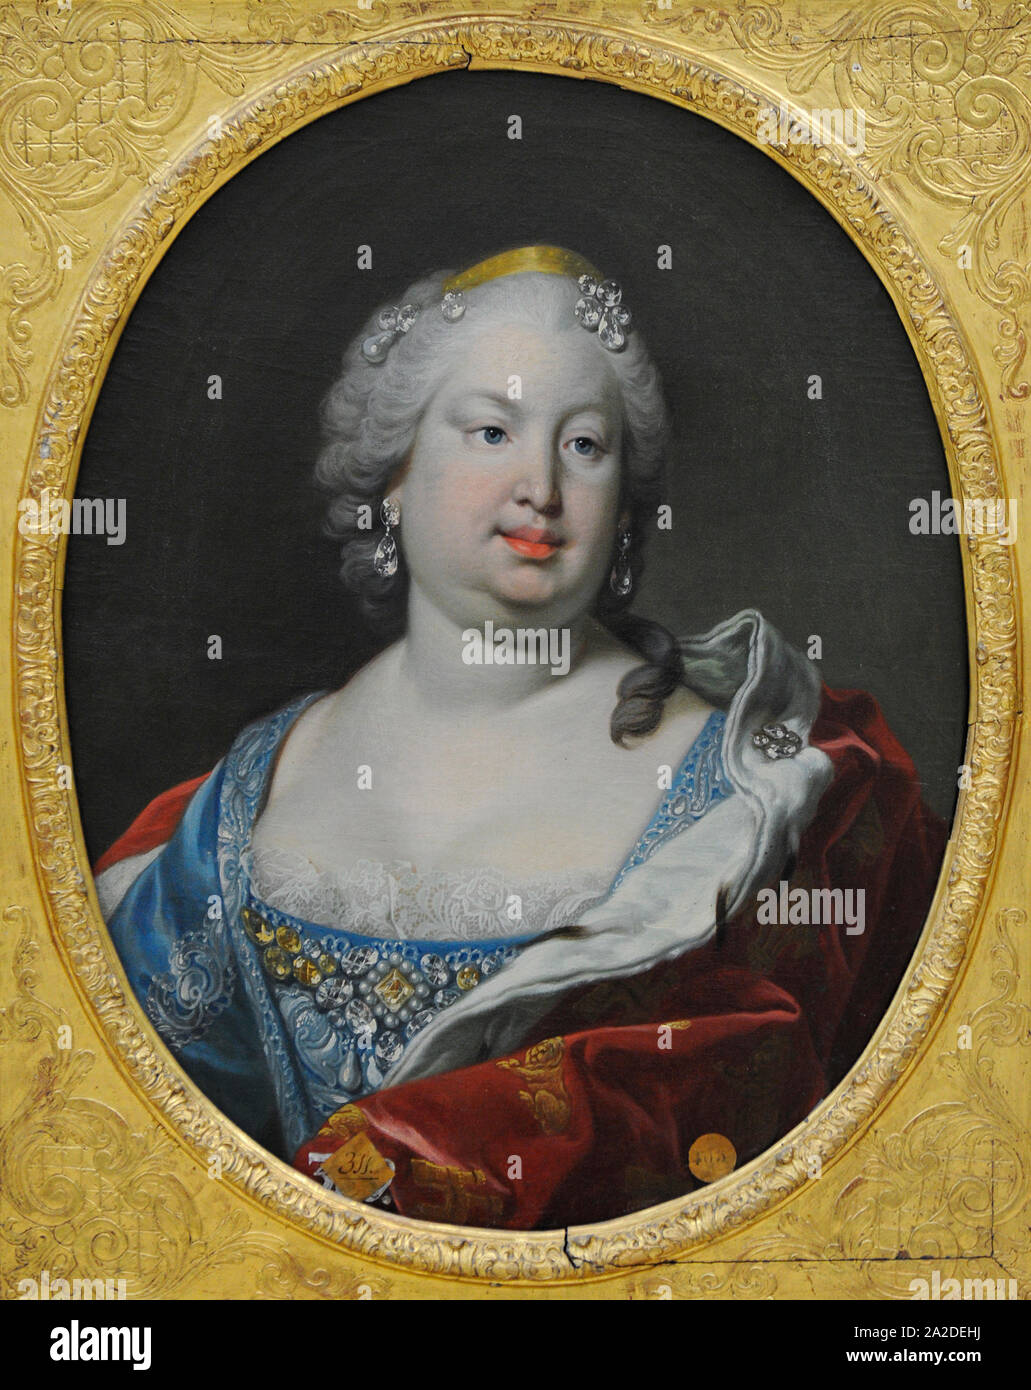 Barbara de Portugal (1711-1758). La reine d'Espagne, épouse de Ferdinand VI. Portrait par Louis Michel Van Loo (1707-1771). San Fernando Académie Royale des Beaux-arts de Madrid. L'Espagne. Banque D'Images